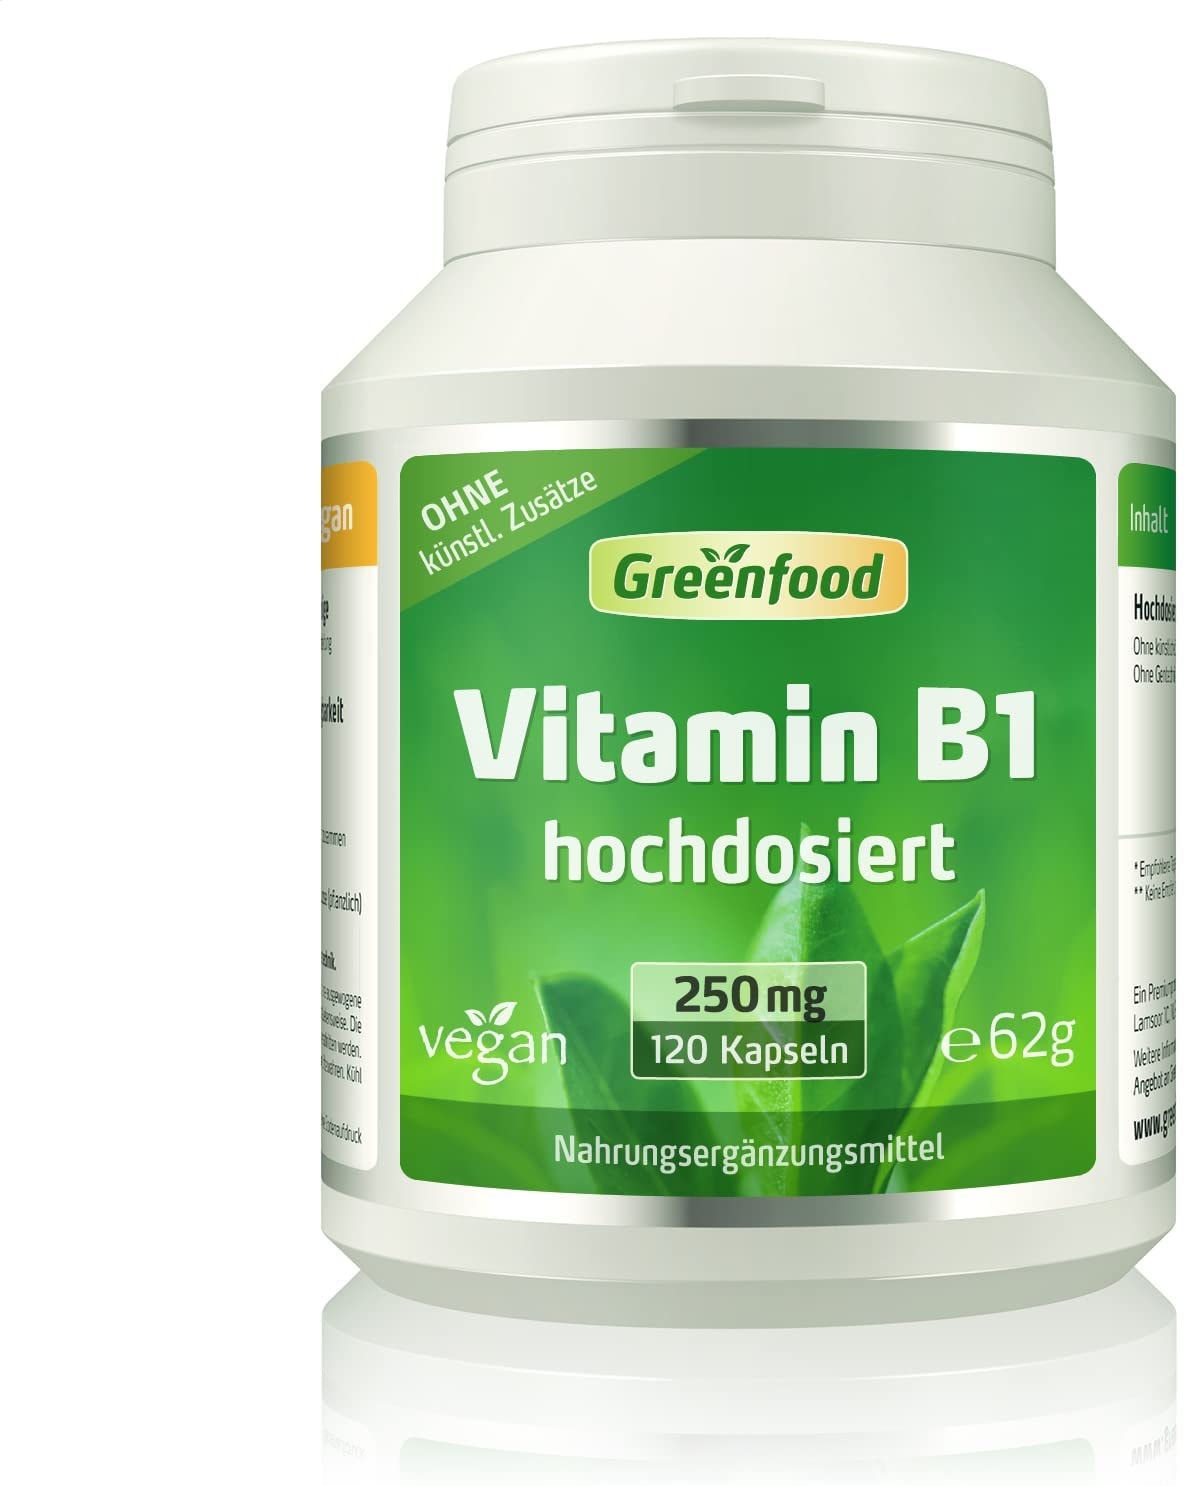 Greenfood Vitamin B1, 250 mg, hochdosiert, 120 Kapseln - für starke Nerven und einen klaren Kopf. OHNE künstliche Zusätze. Ohne Gentechnik. Vegi-Kapseln. Vegan.